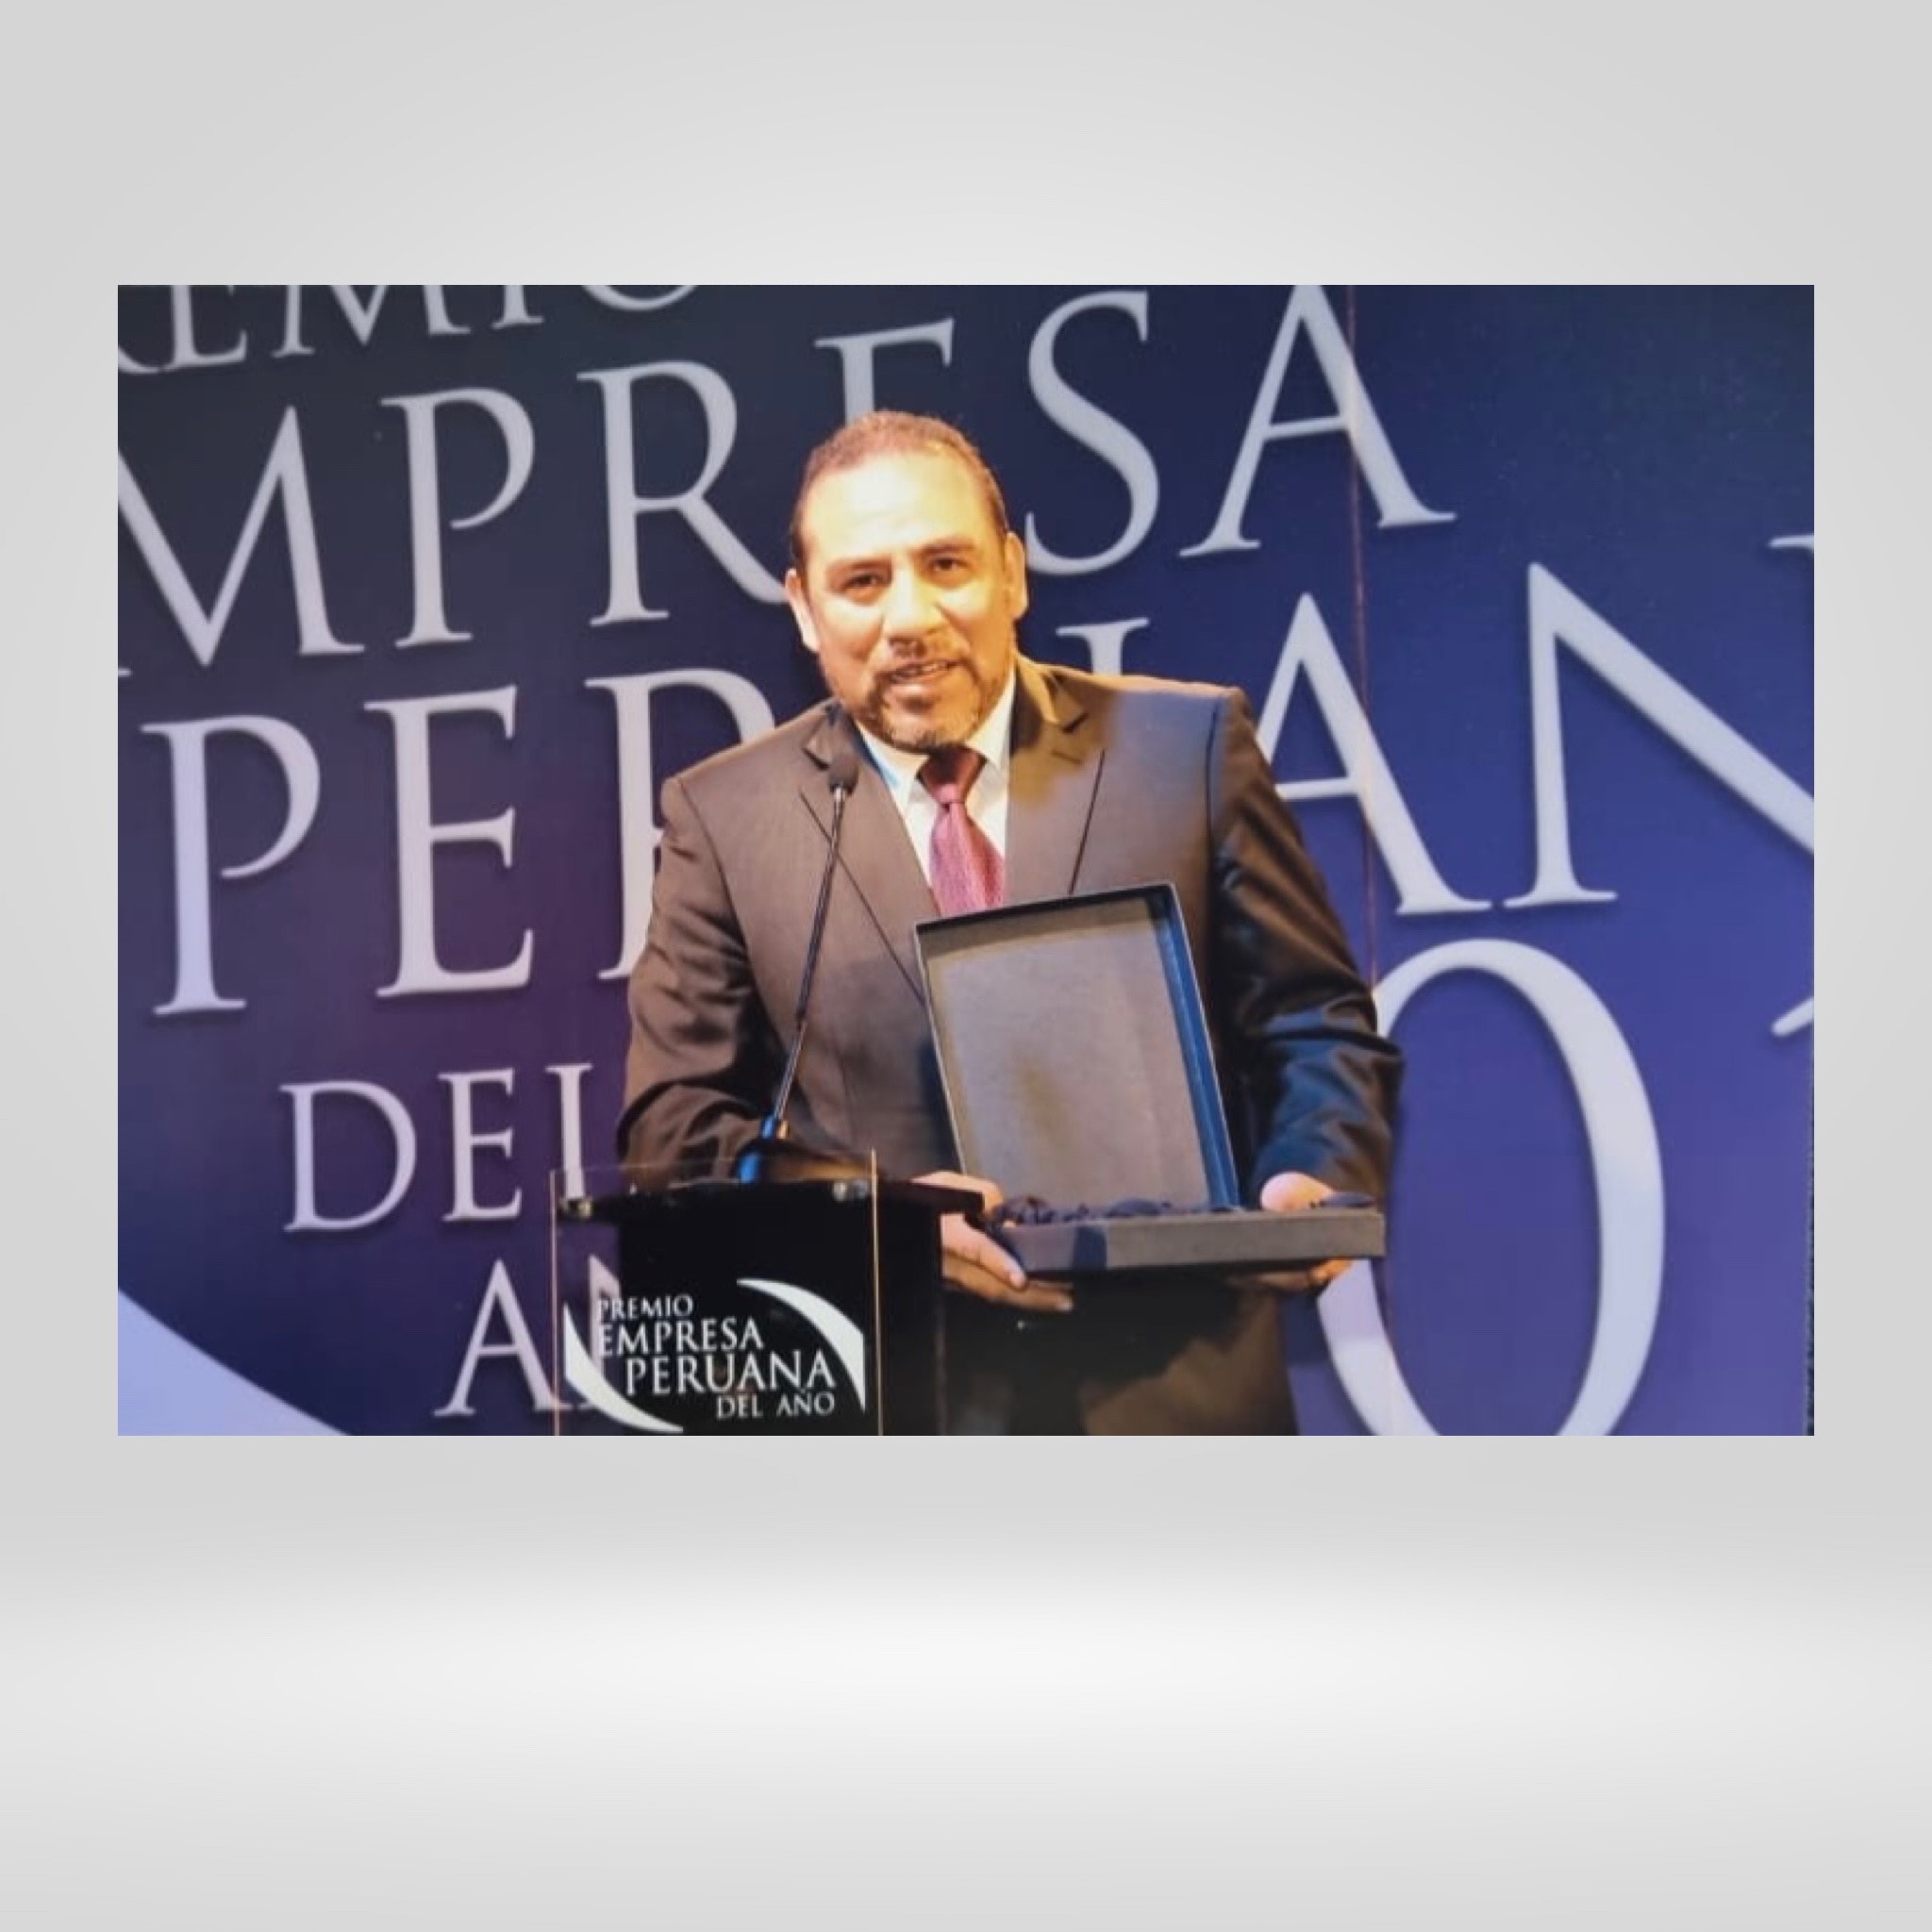 Premio Empresa Peruana del Año 2013